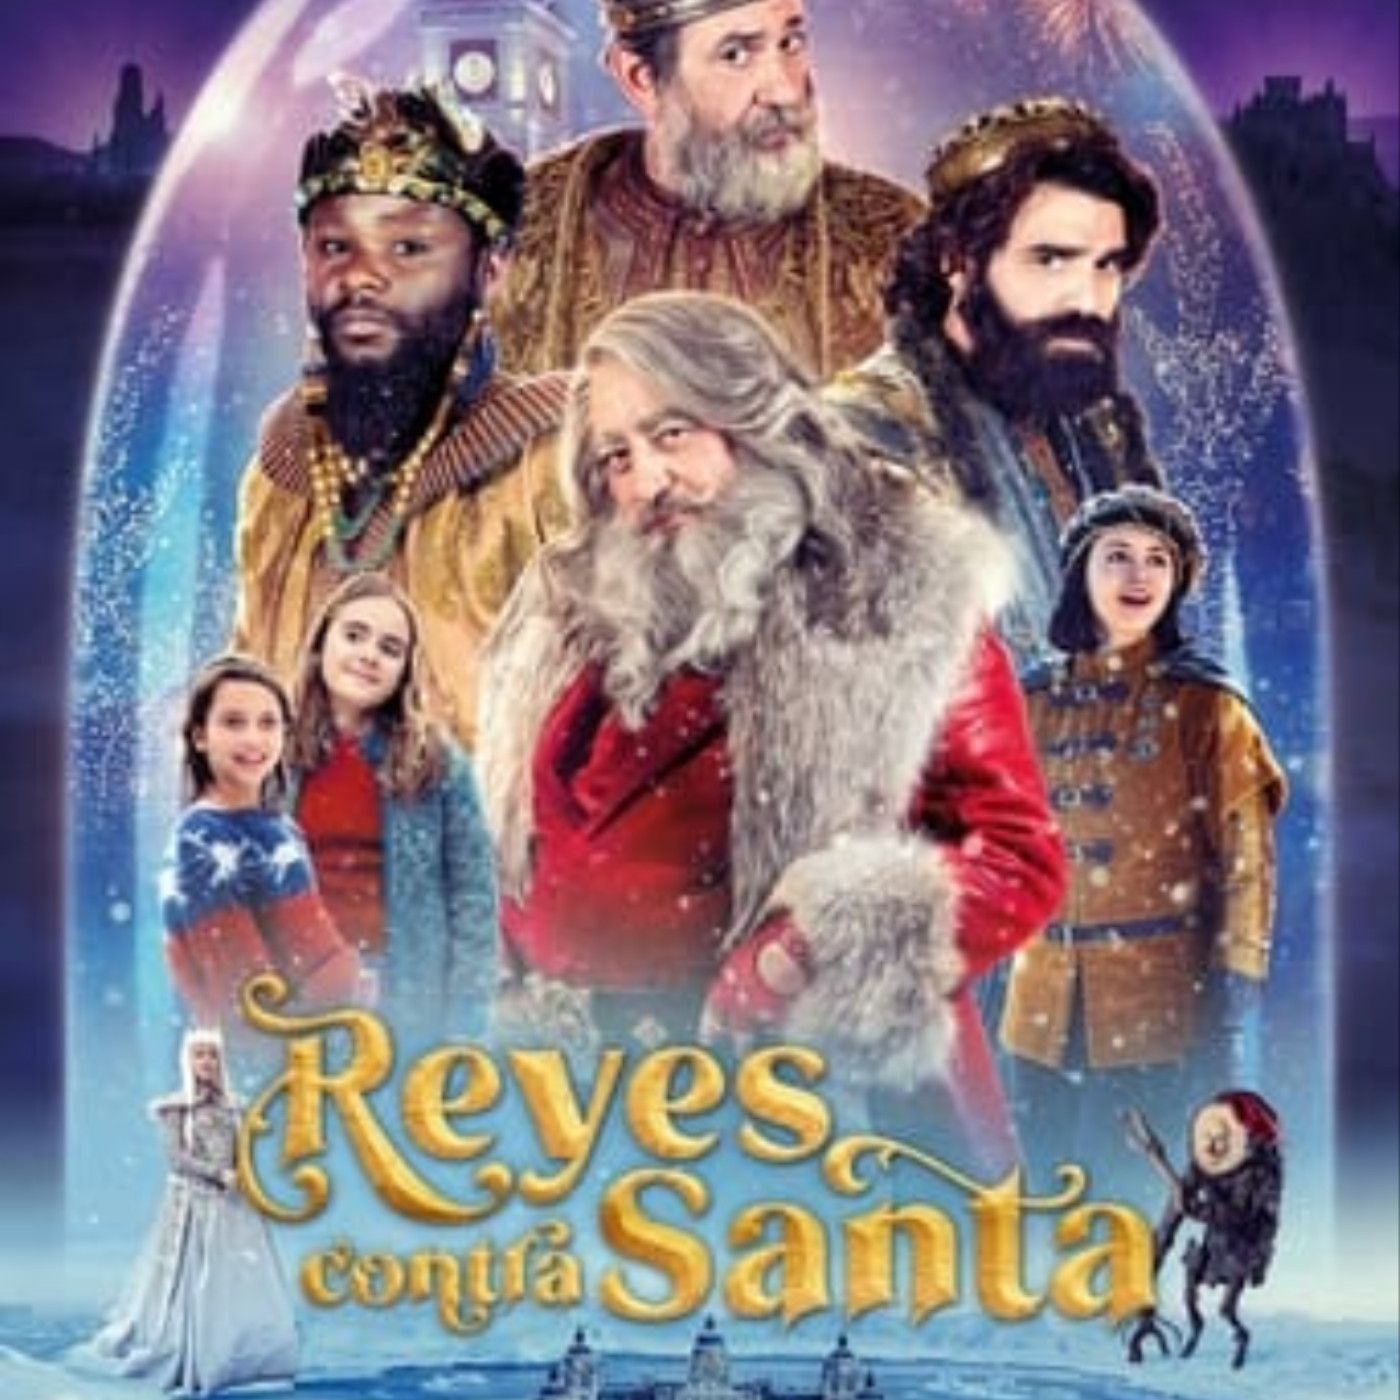 UHDTV] Reyes contra Santa pelicula completa en español gratis Gnula |  Podcast on SoundOn